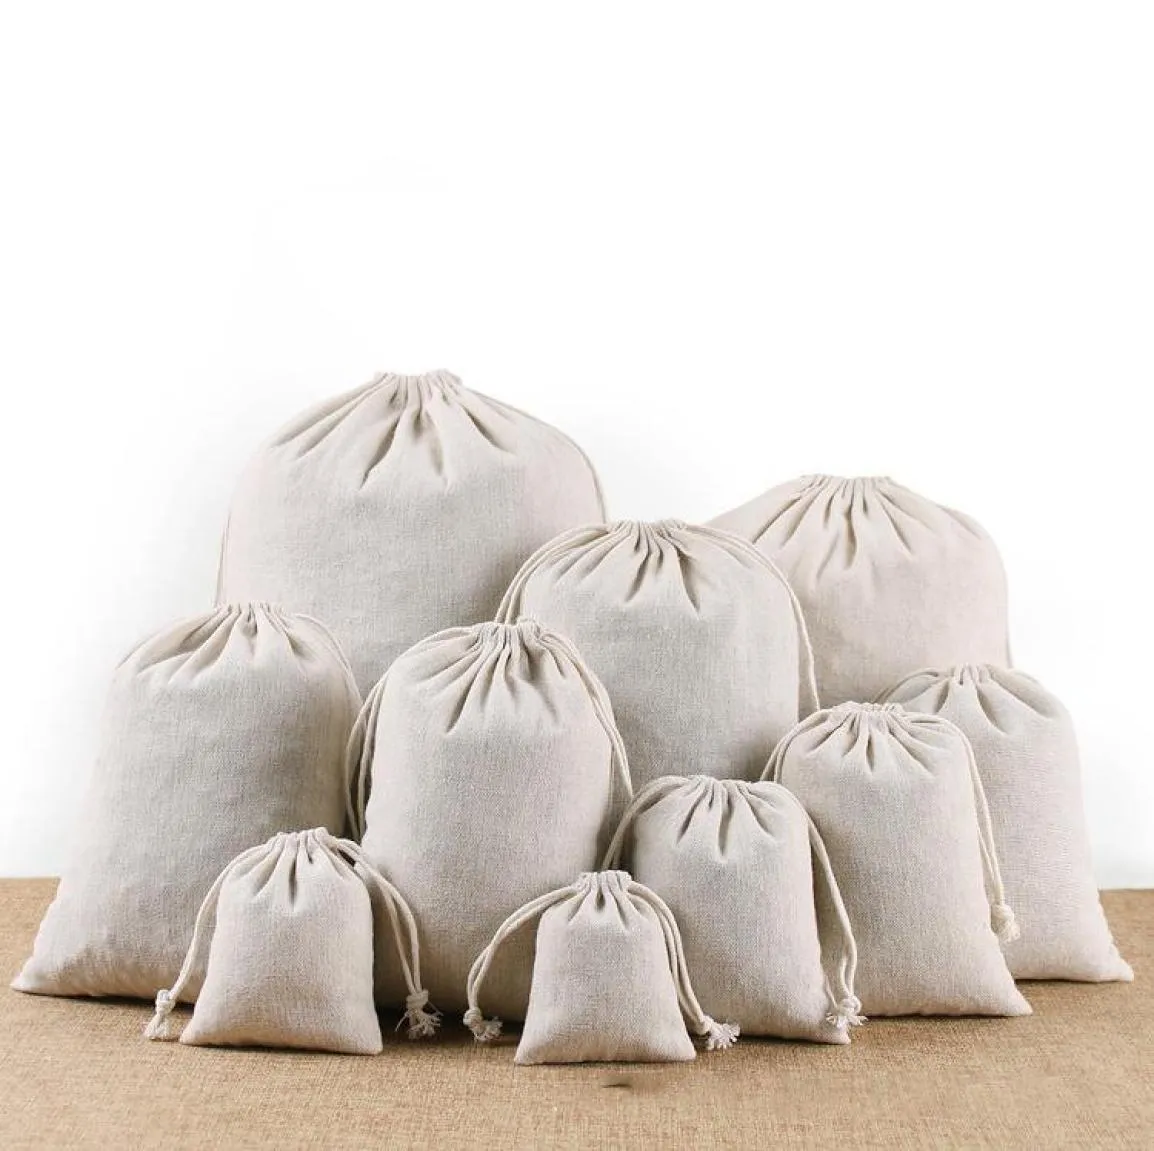 Wrap regalo da 50 pezzi da cotone borse di cotone borse da imballaggio riutilizzabile per la mussola per il matrimonio bomboniere festa natale7110388